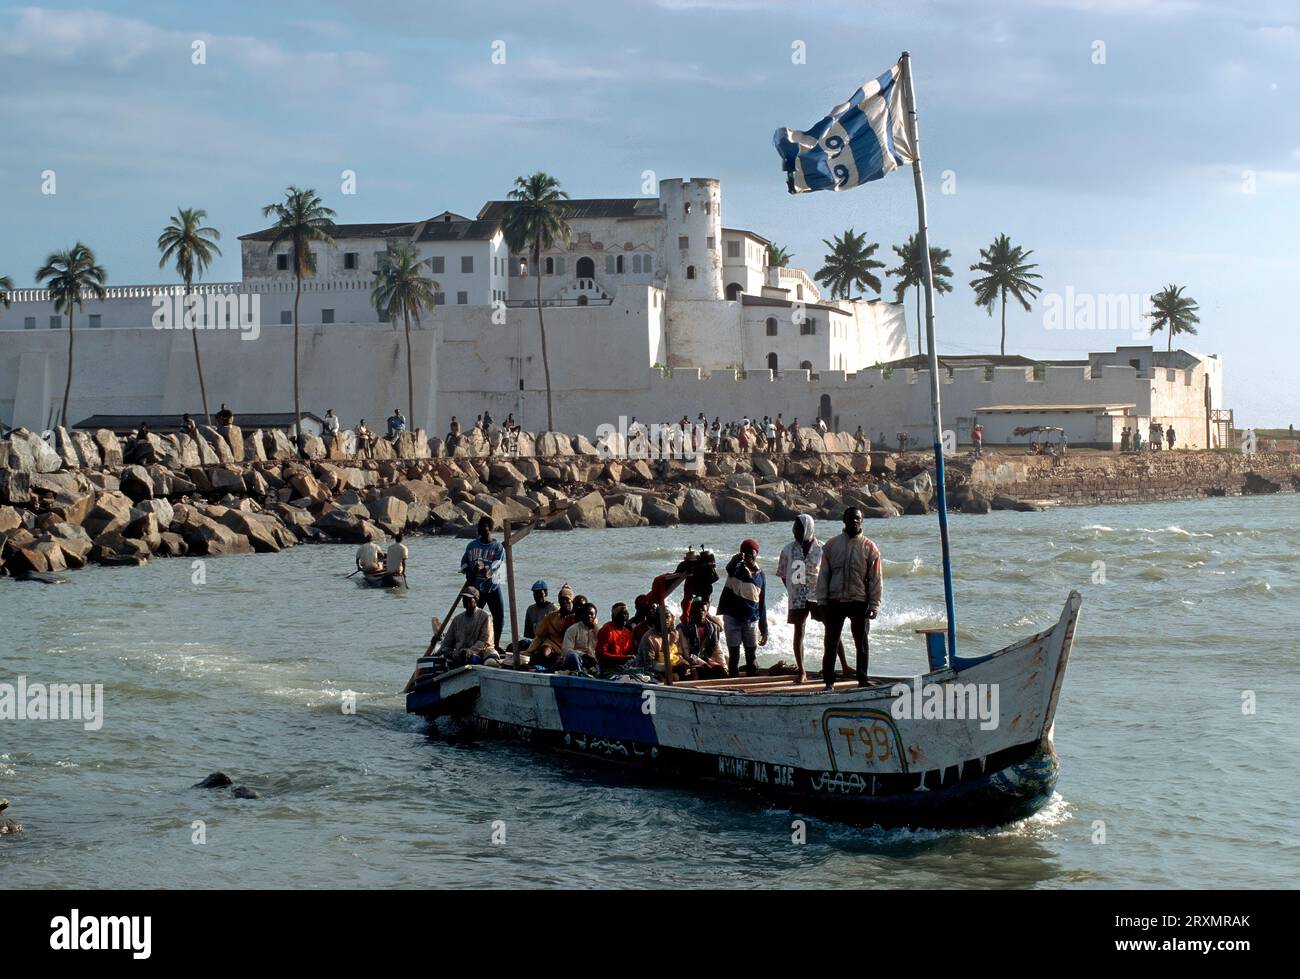 GHA, Ghana: Barca di fronte a Fort Elmina. Costruito dai portoghesi nel XV secolo e successivamente di proprietà degli olandesi e degli inglesi, Fort Elmina deteneva gli africani prima della spedizione verso i mercati degli schiavi delle Americhe Foto Stock